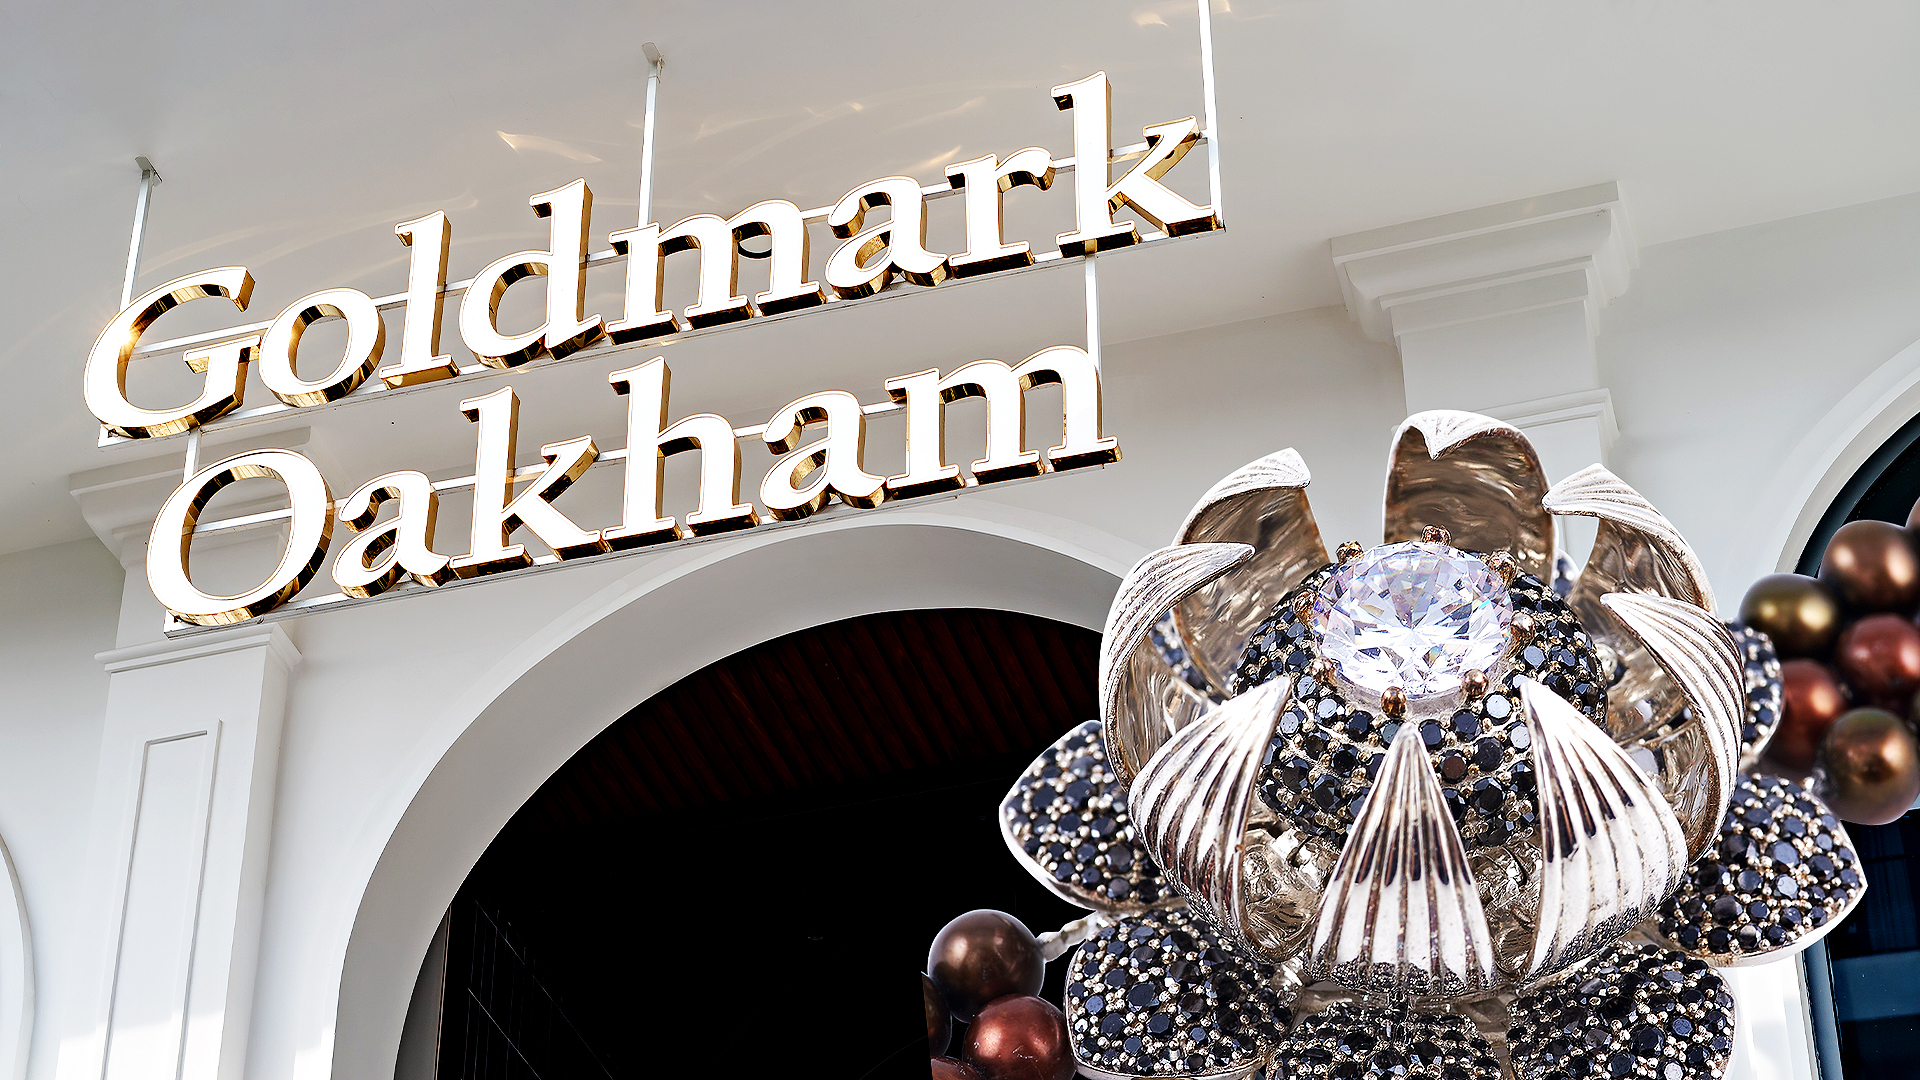 Trang sức Goldmark Oakham: Hành trình kiến tạo những giá trị trường tồn